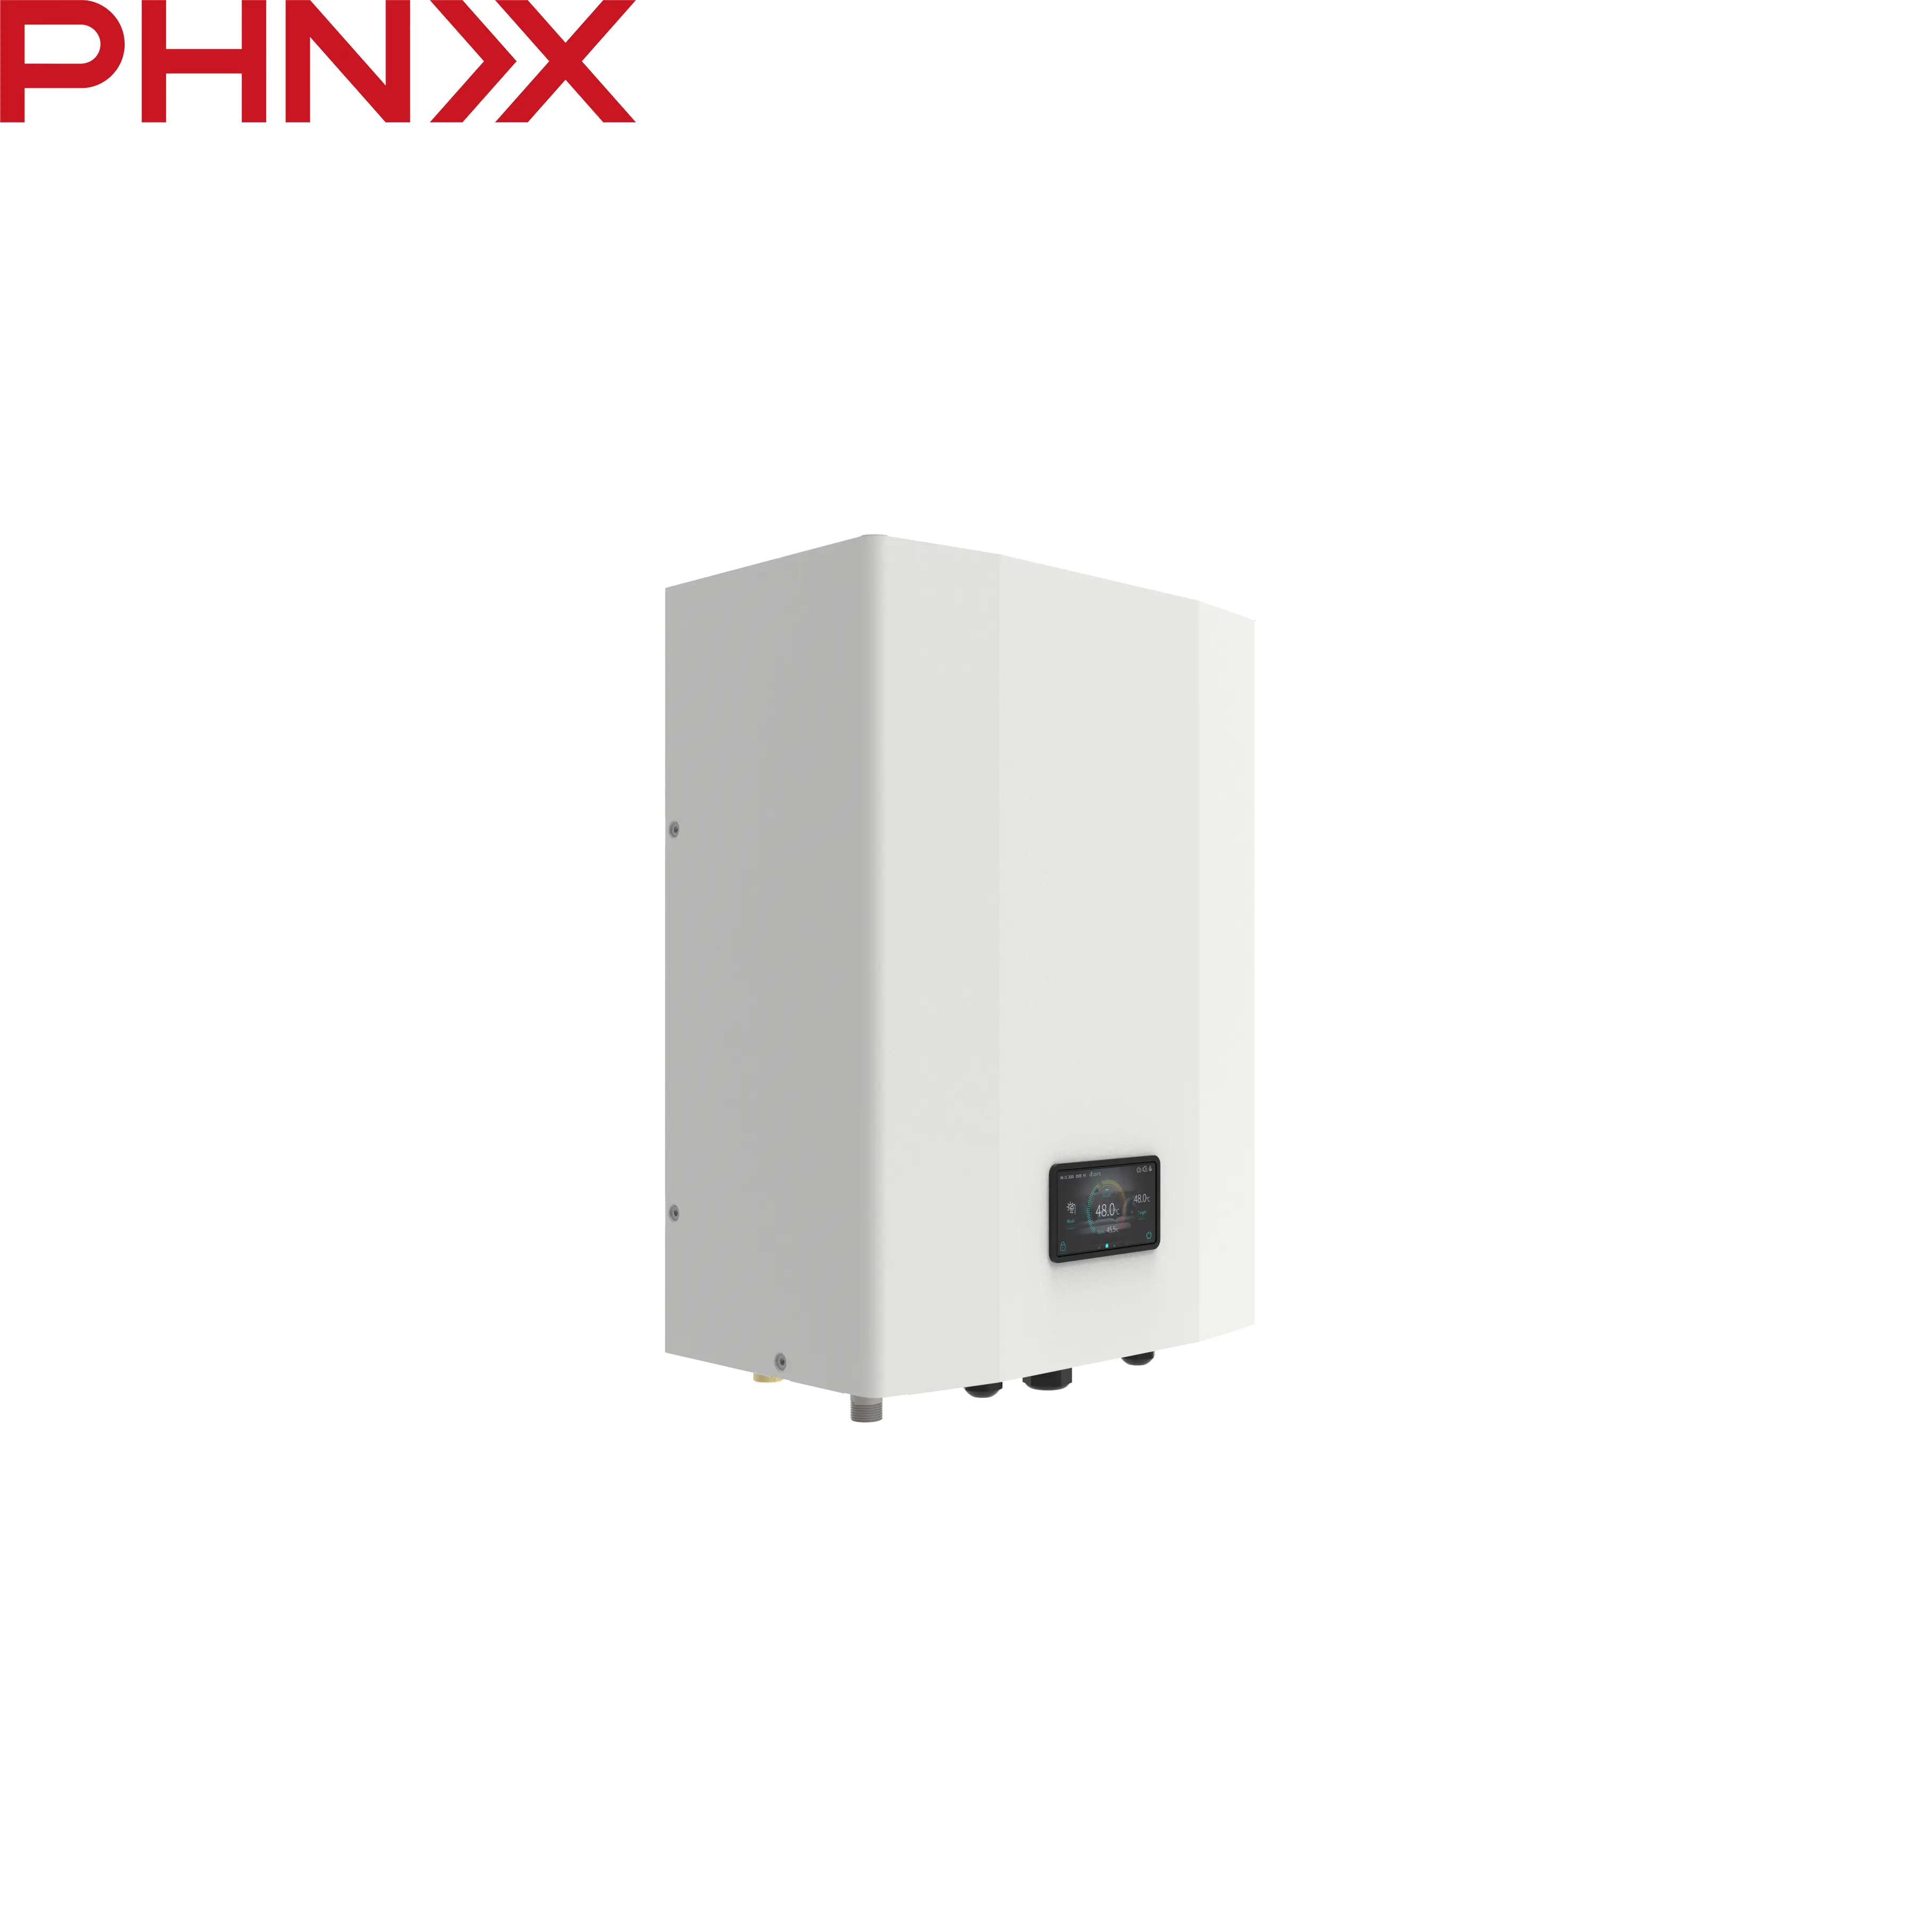 Phnix Hydraulische Module Easyhydro Verbinden Met Warmtepomp Voor Ruimteverwarming En Warm Water Noord-Amerikaanse Standaard